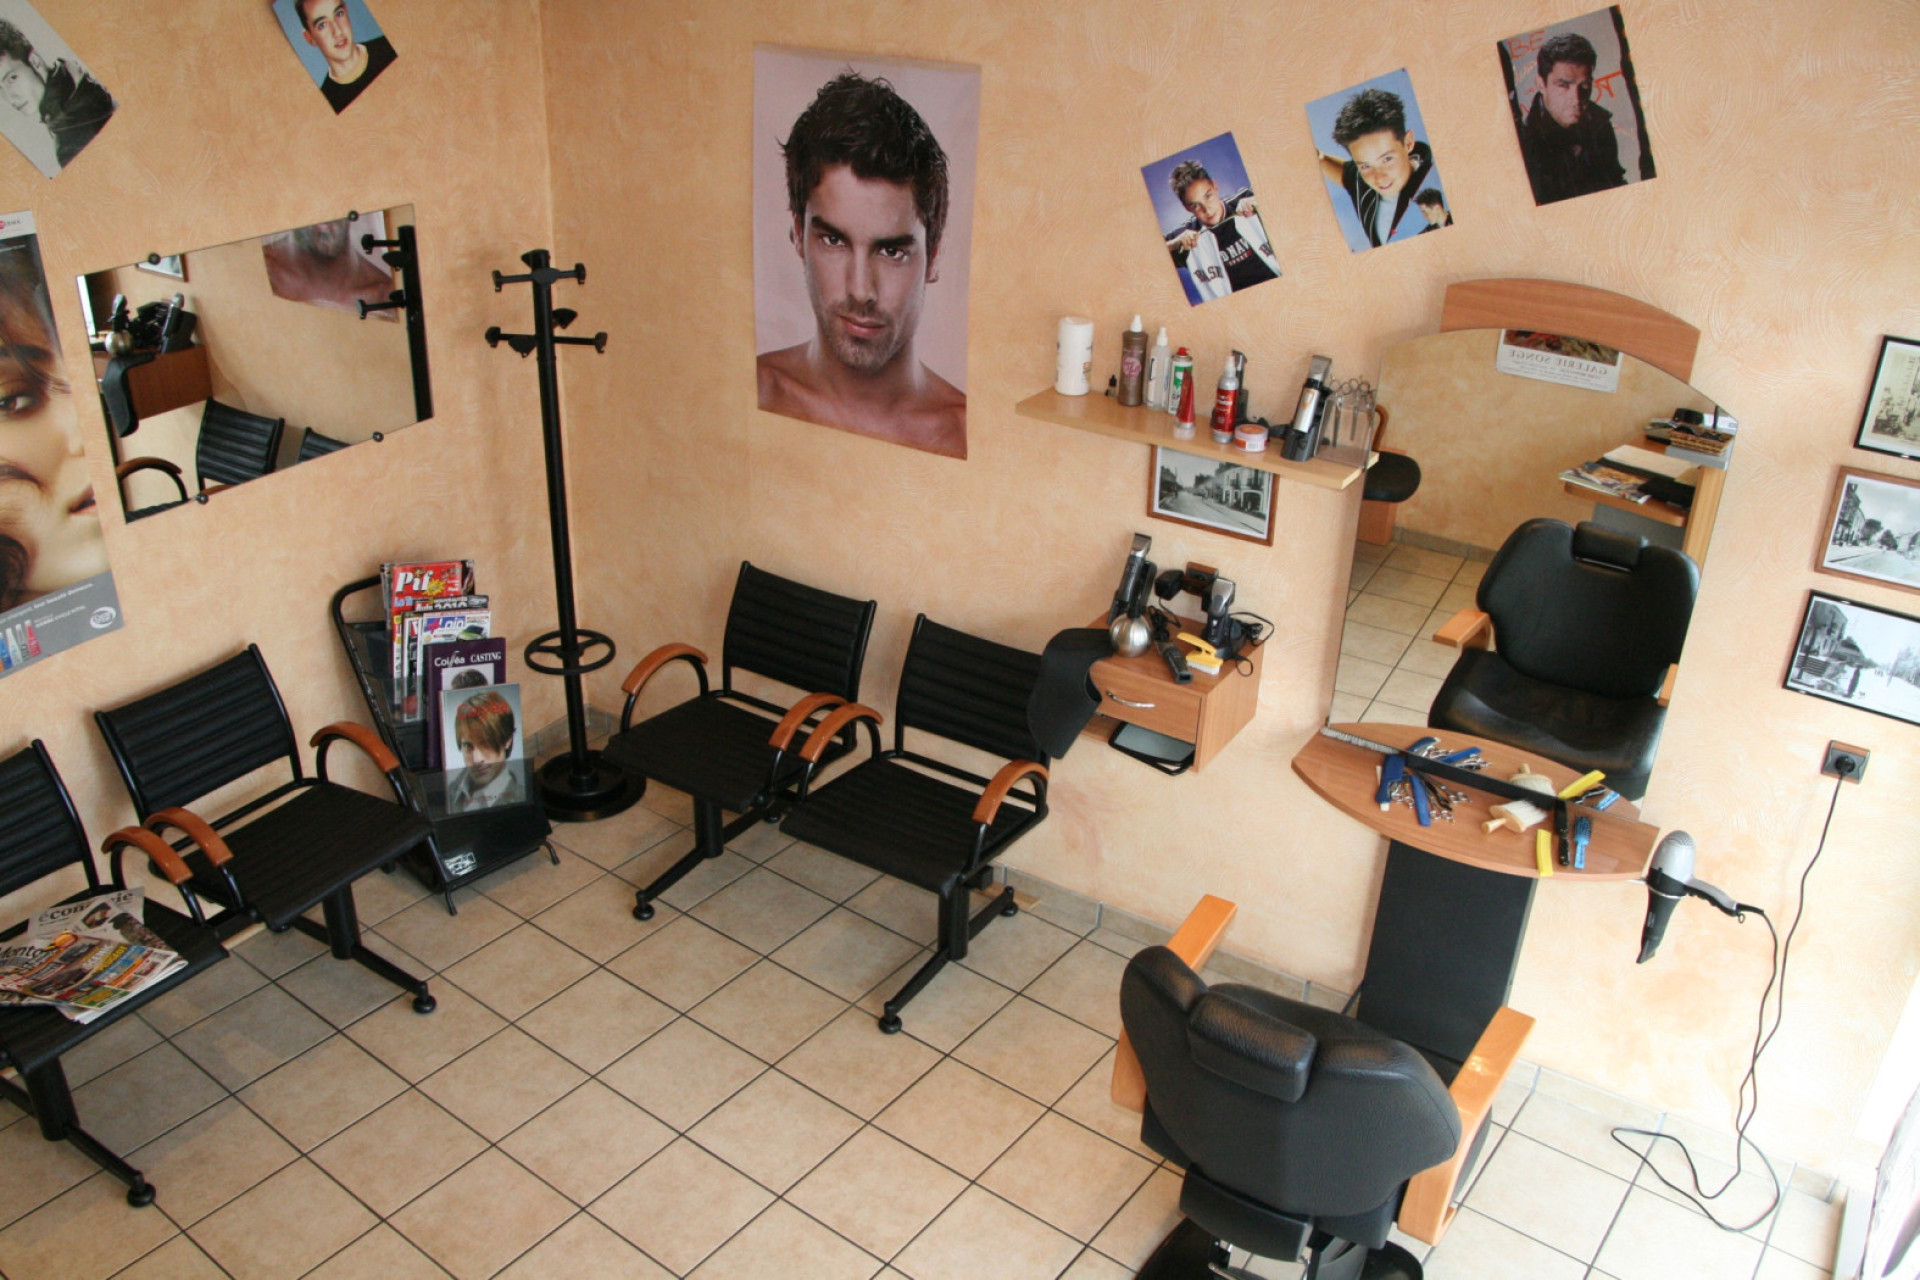 Salon de coiffure mixte 38m2 3 pièces 3 bacs et 3 coiffages rue passagère